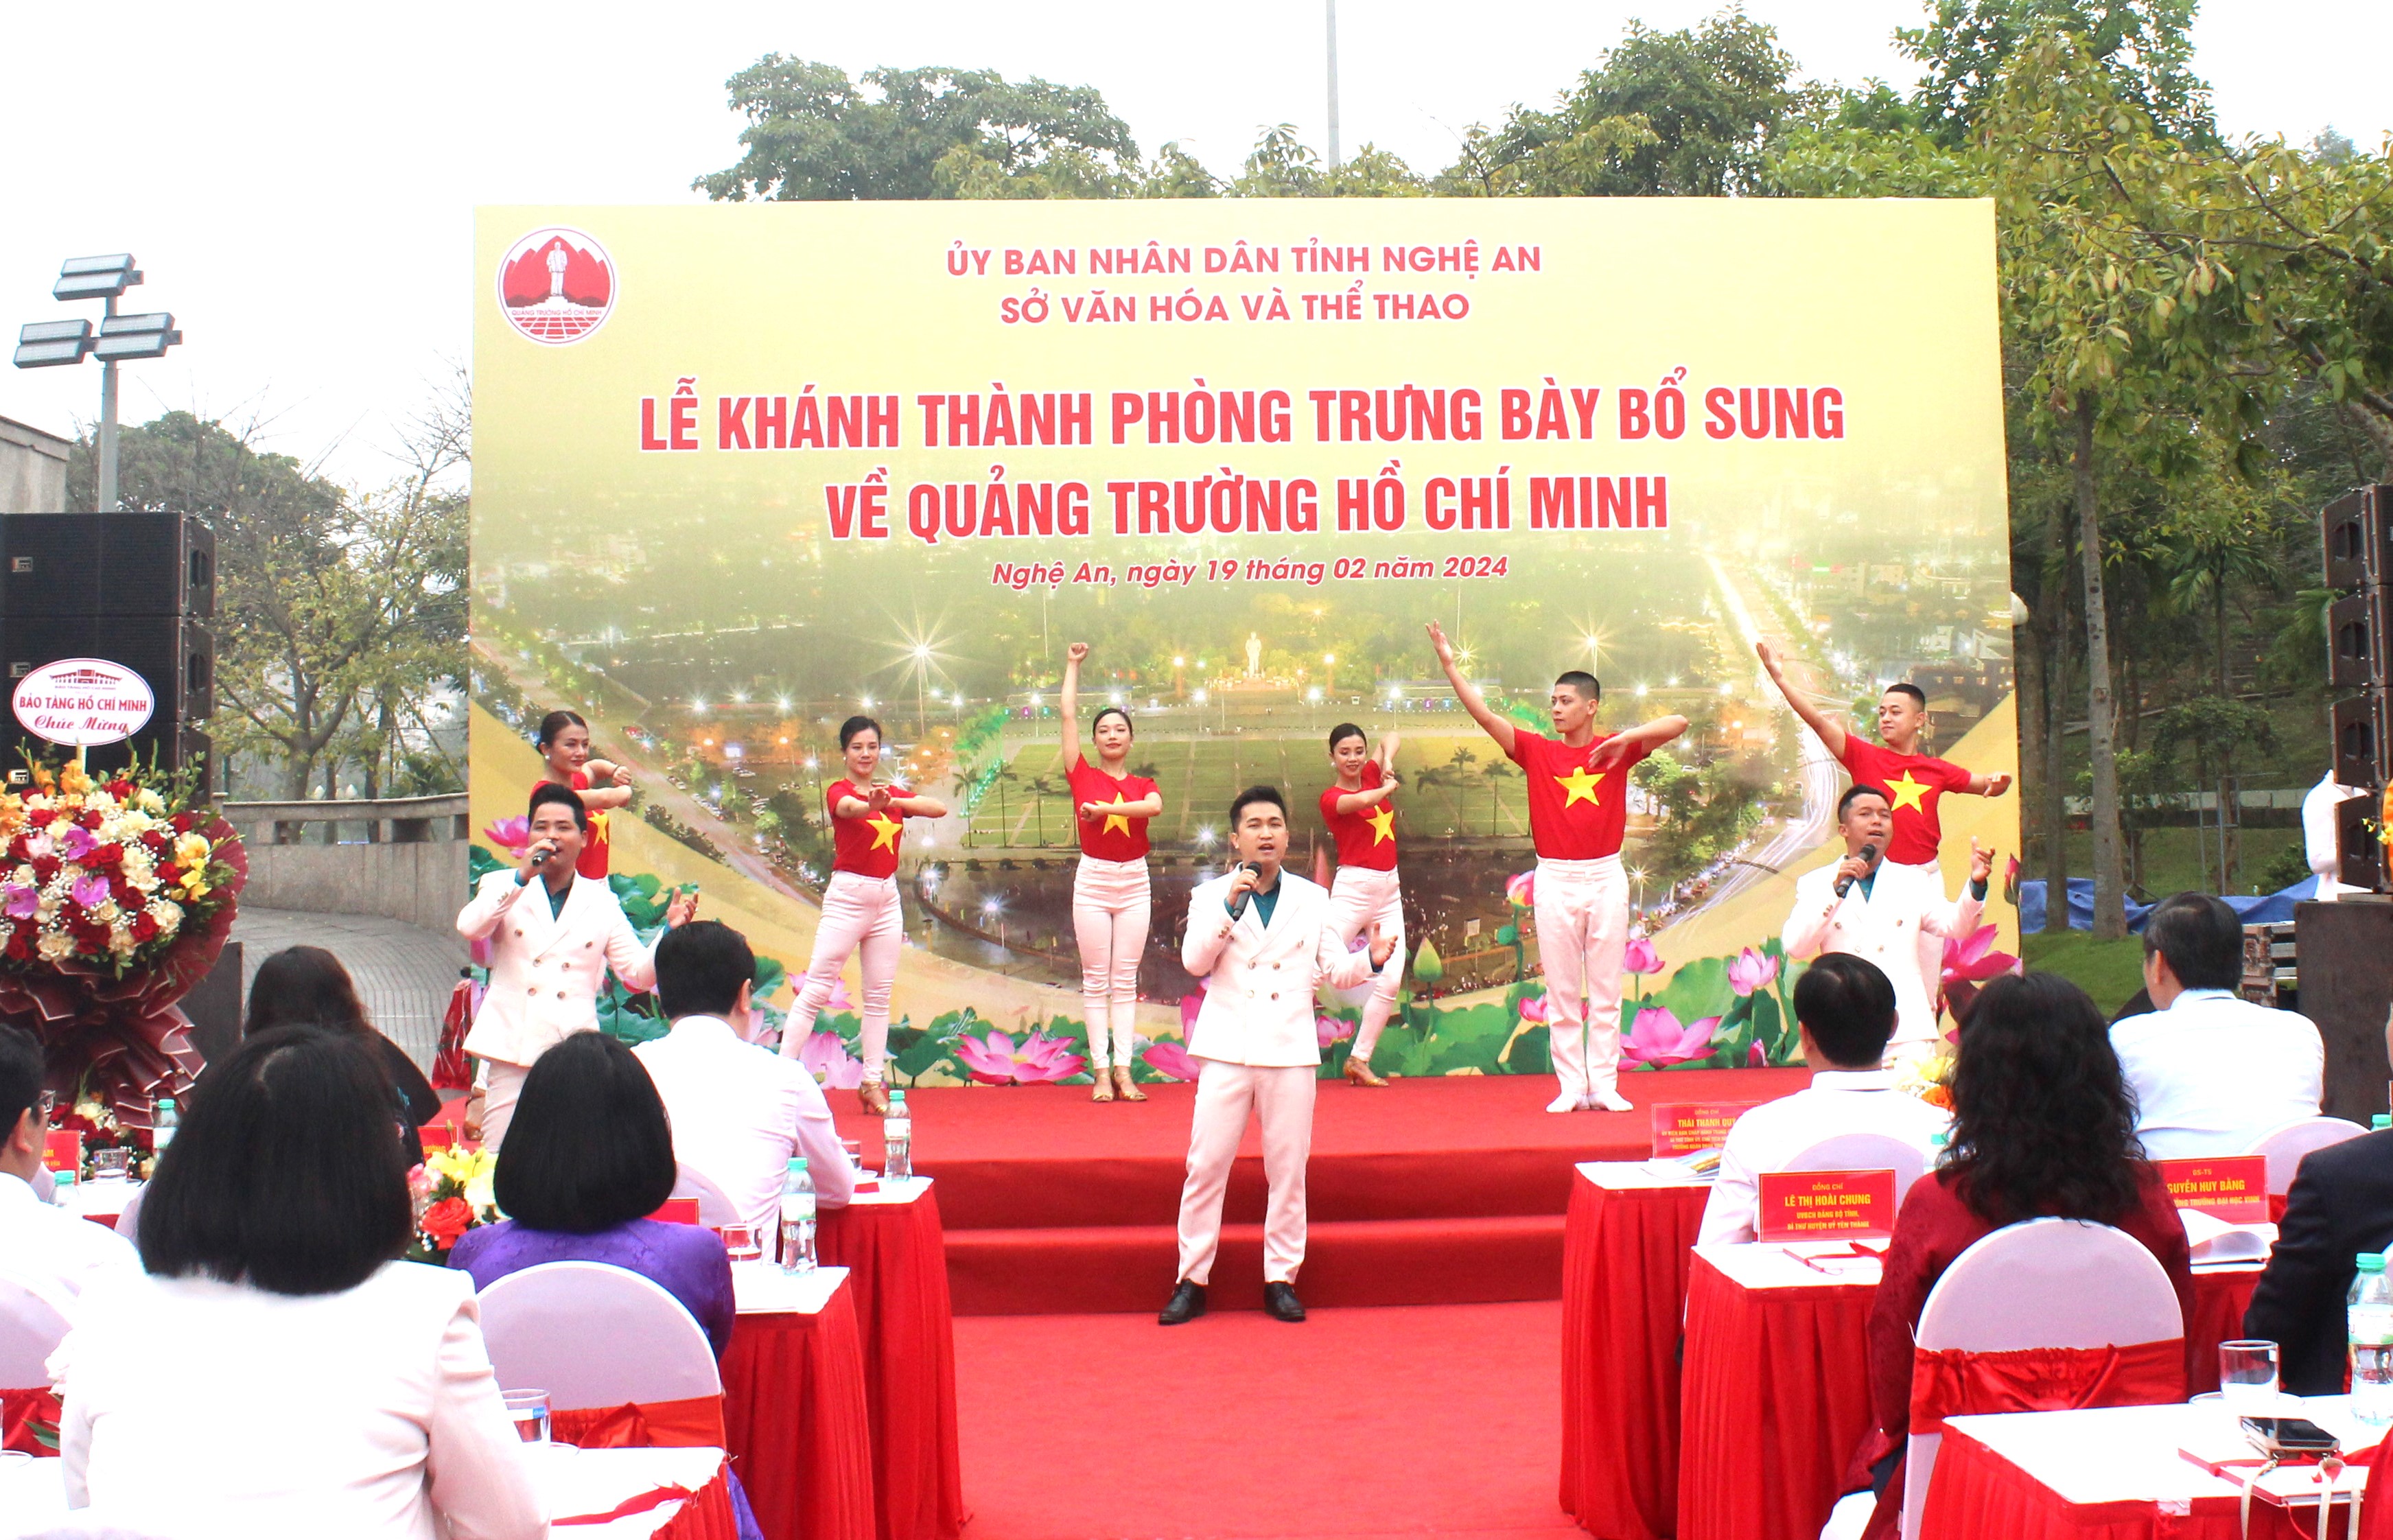 Sở Văn hóa và Thể thao Nghệ An khánh thành phòng trưng bày bổ sung về Quảng trường Hồ Chí Minh